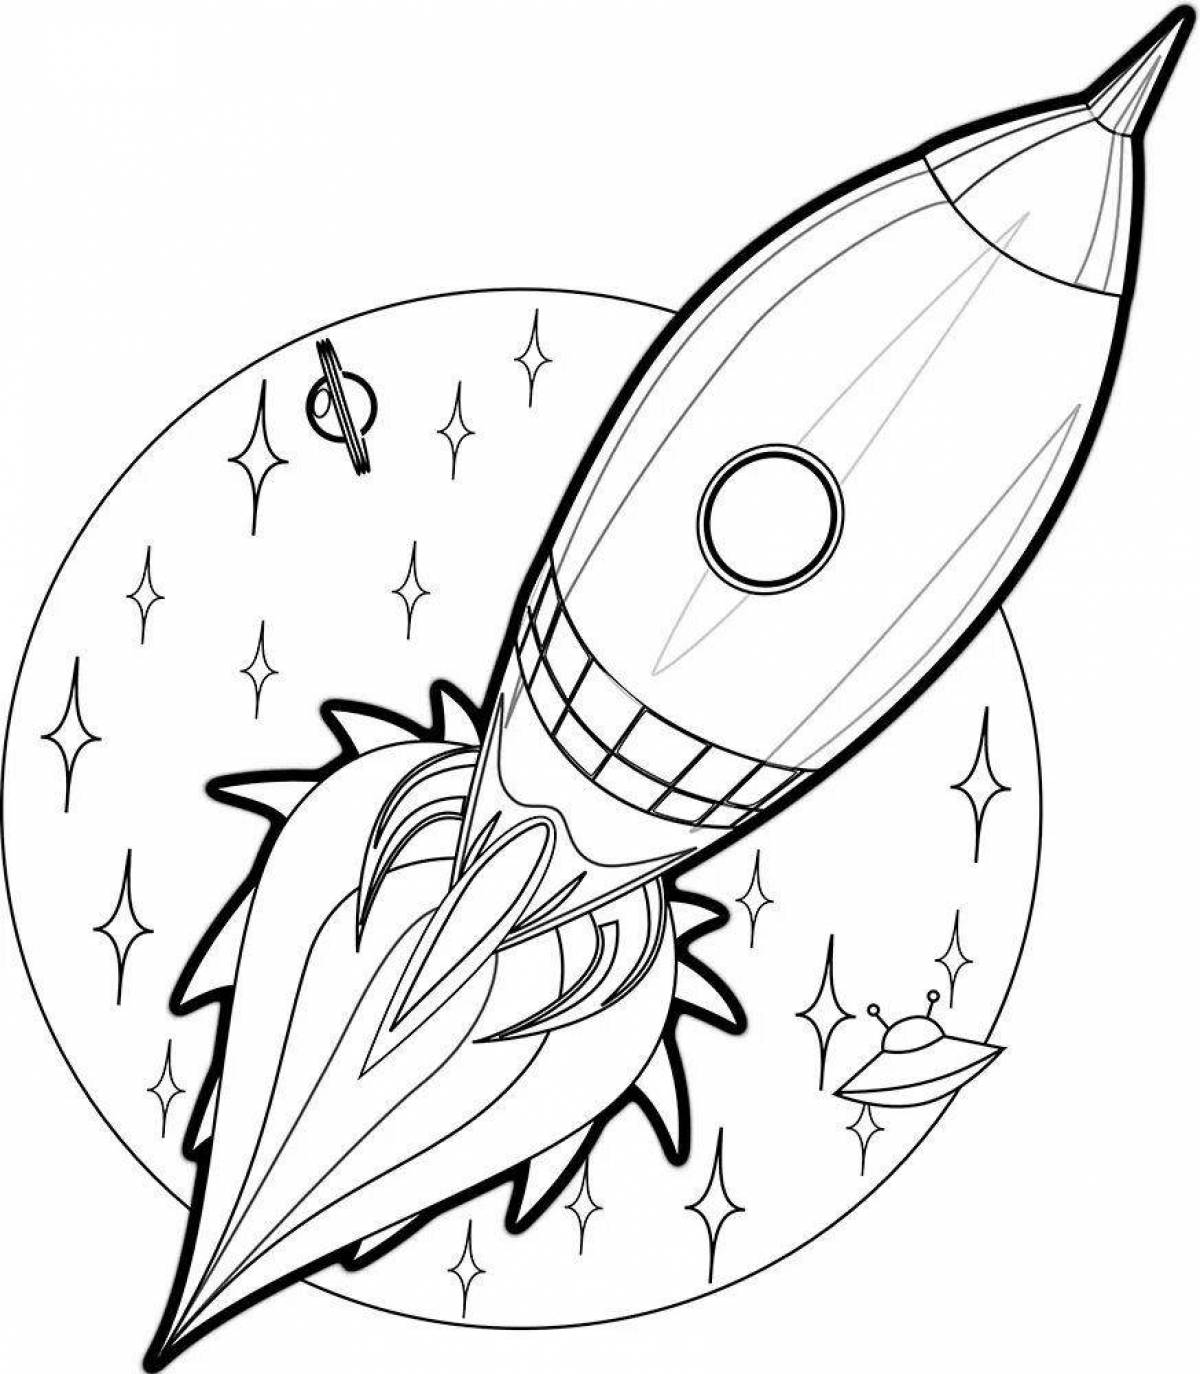 Attractive space rocket coloring book